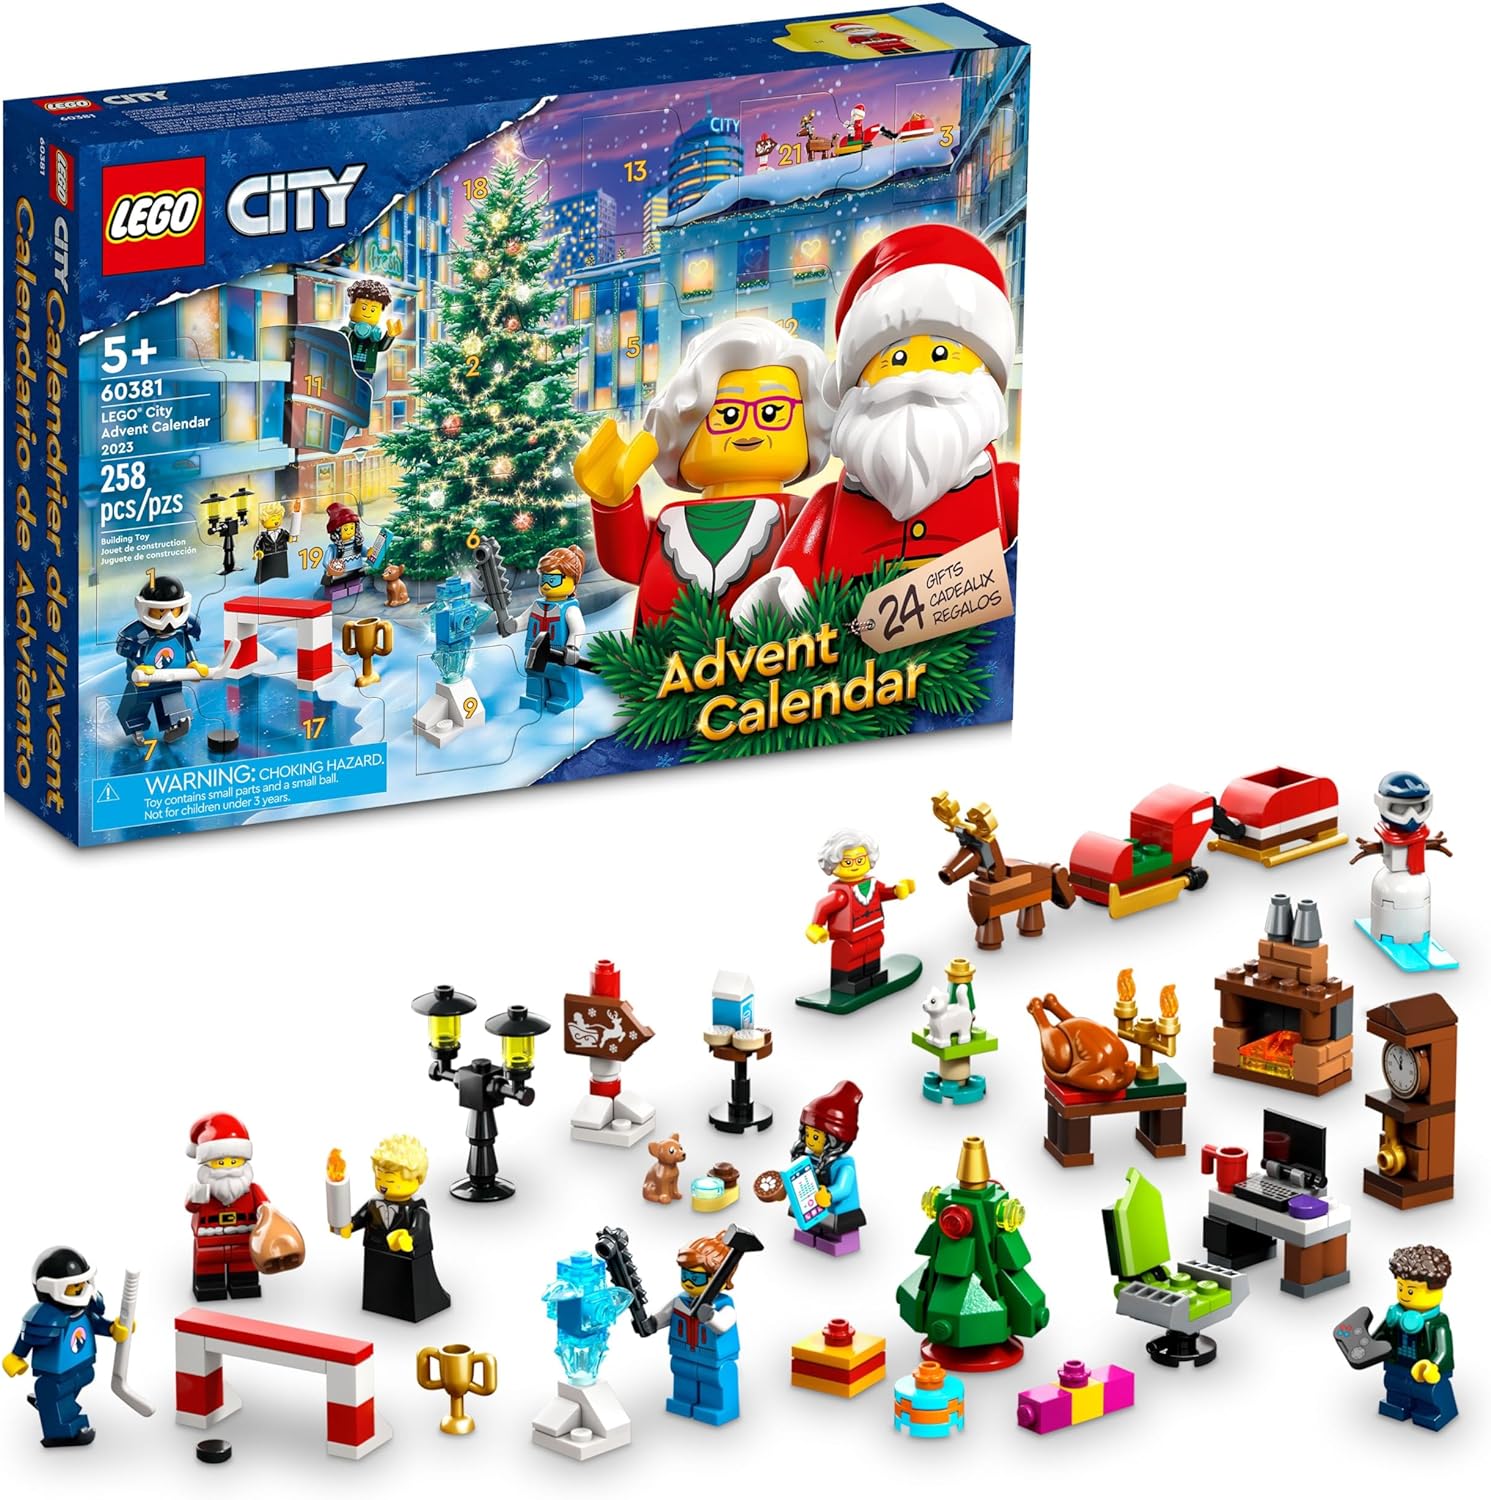 LEGO City 2023 Advent Calendar Set (60381)